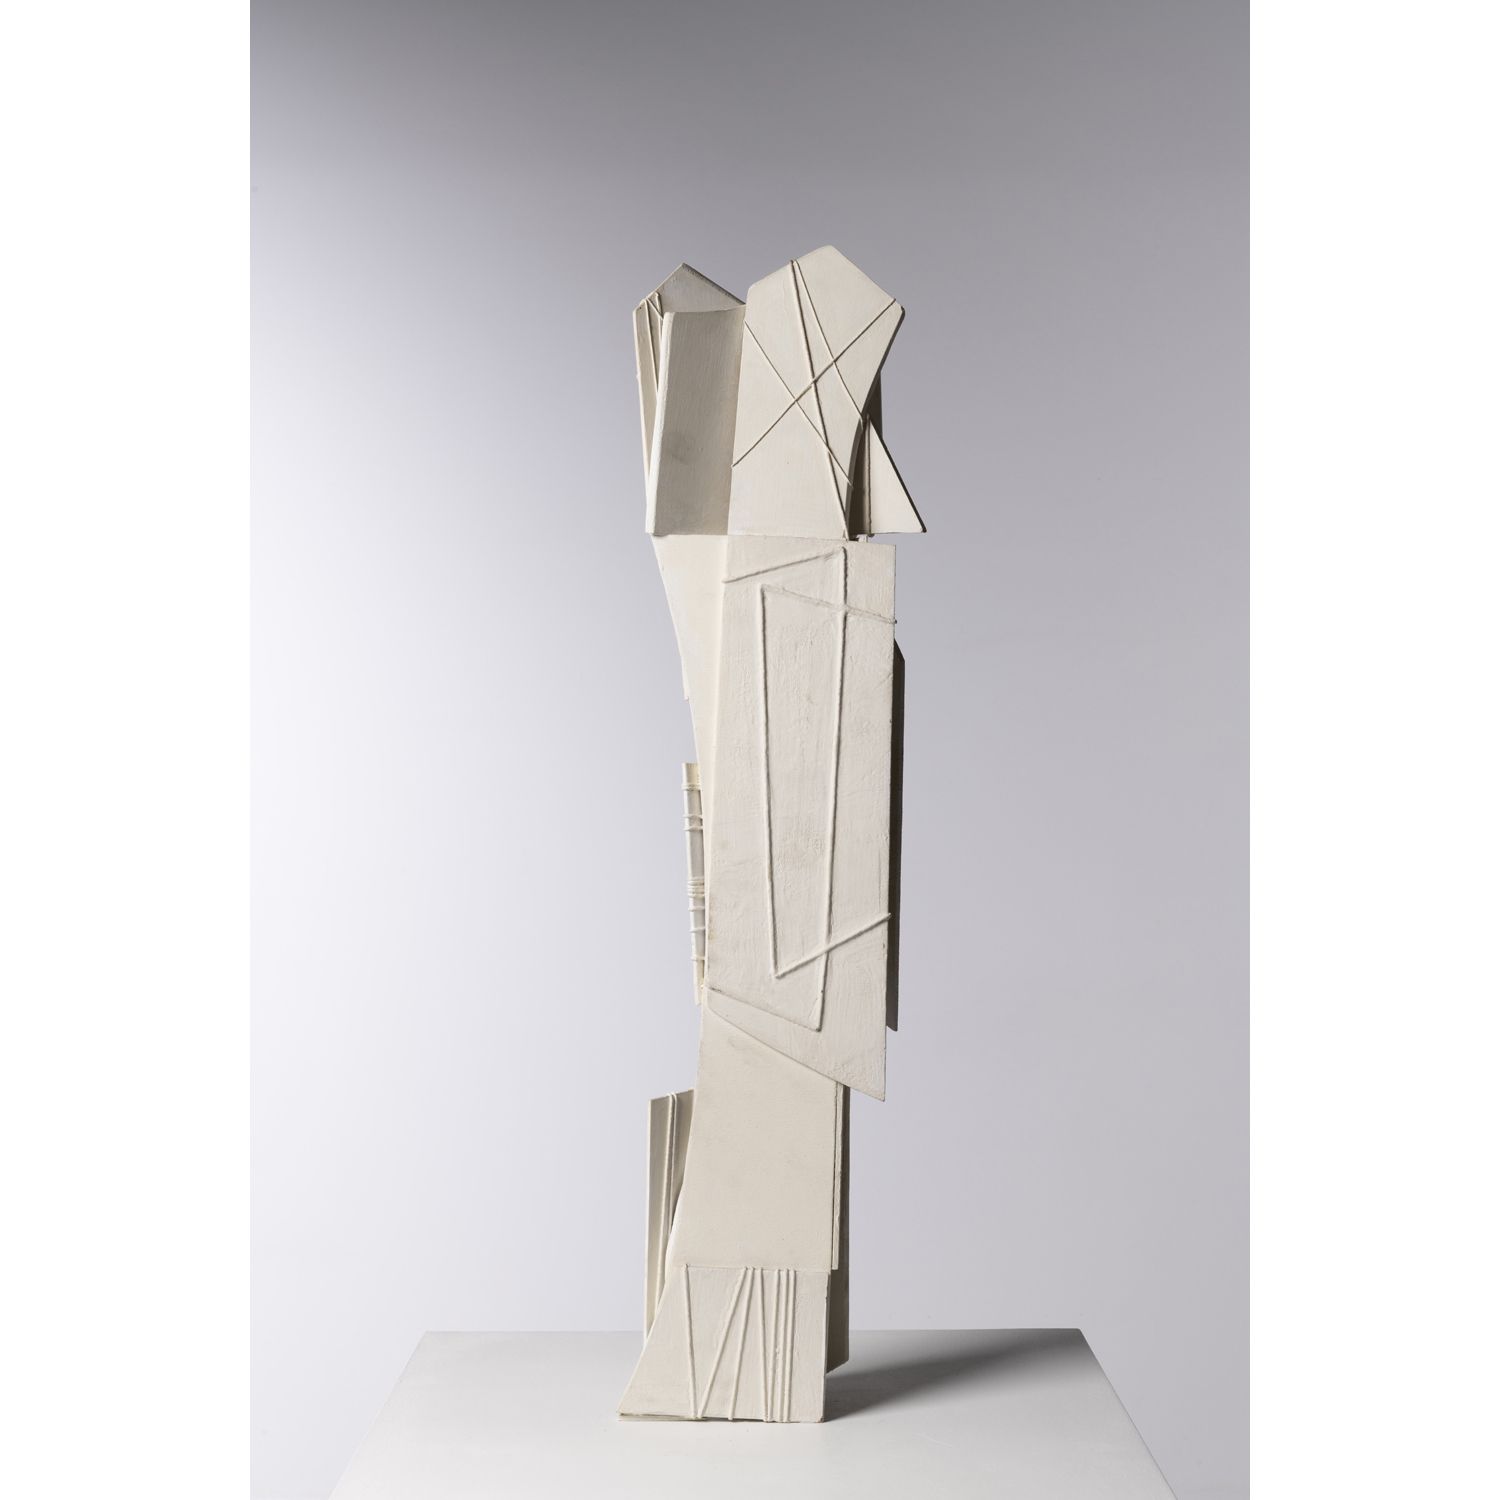 Viviane Hayez (1930-2017) Sculpture Viviane Hayez (1930-2017)

Sculpture

Bois

&hellip;